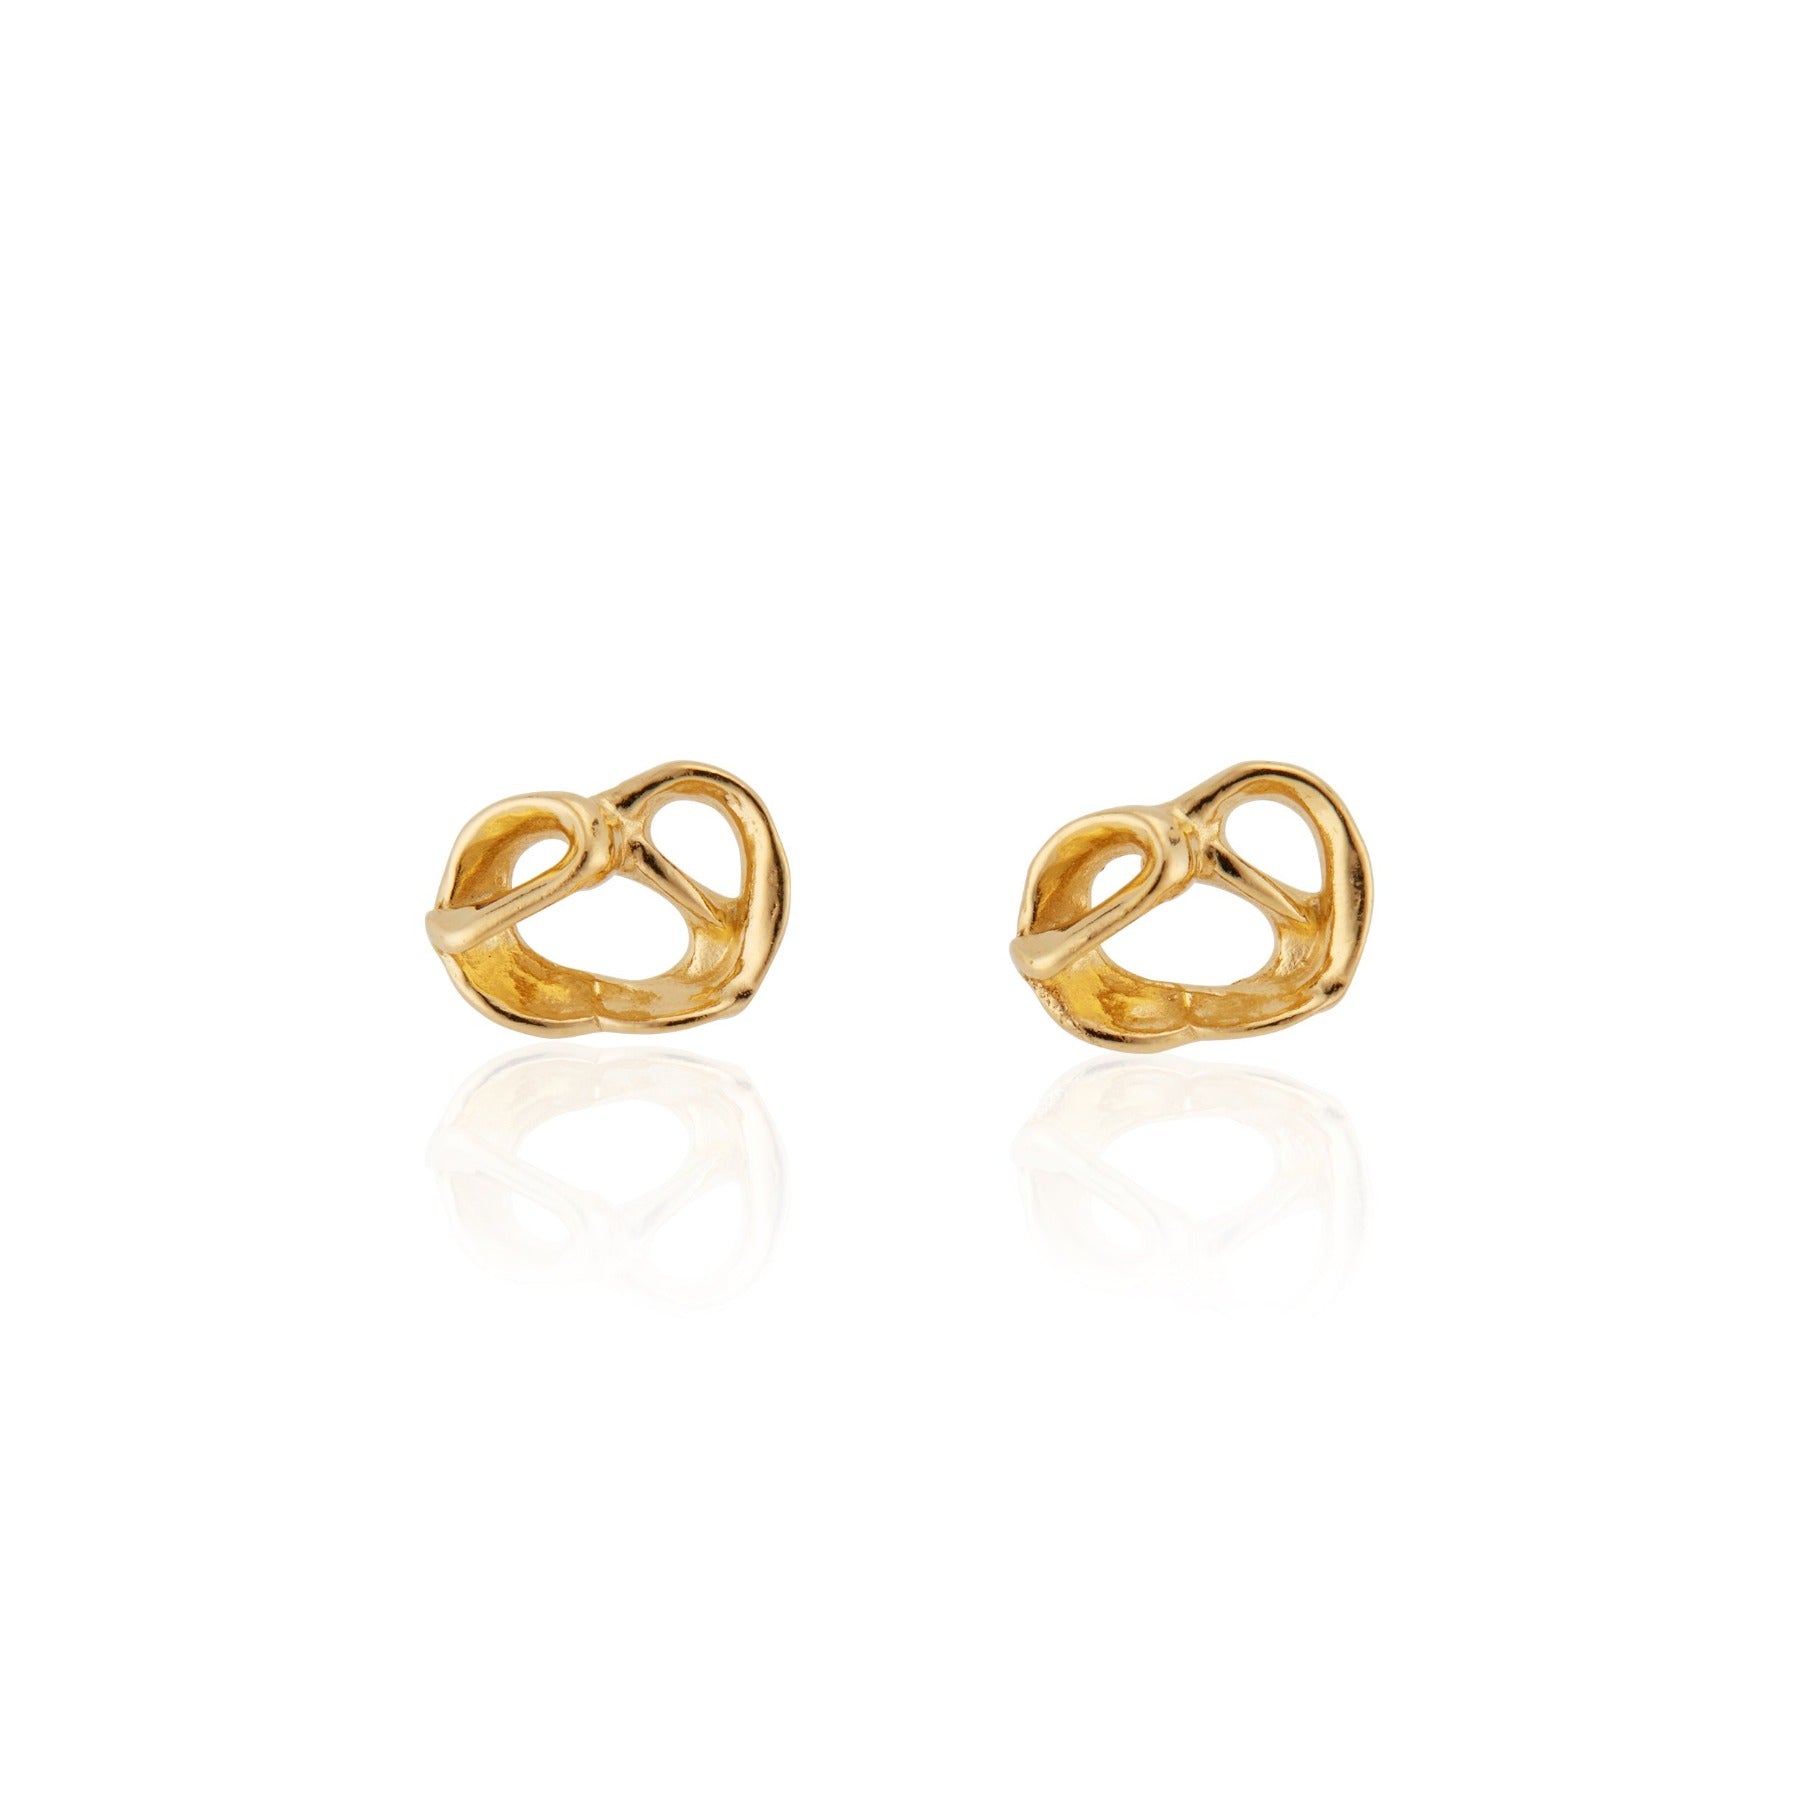 Organically shaped pretzel stud earrings in 18k gold vermeil.